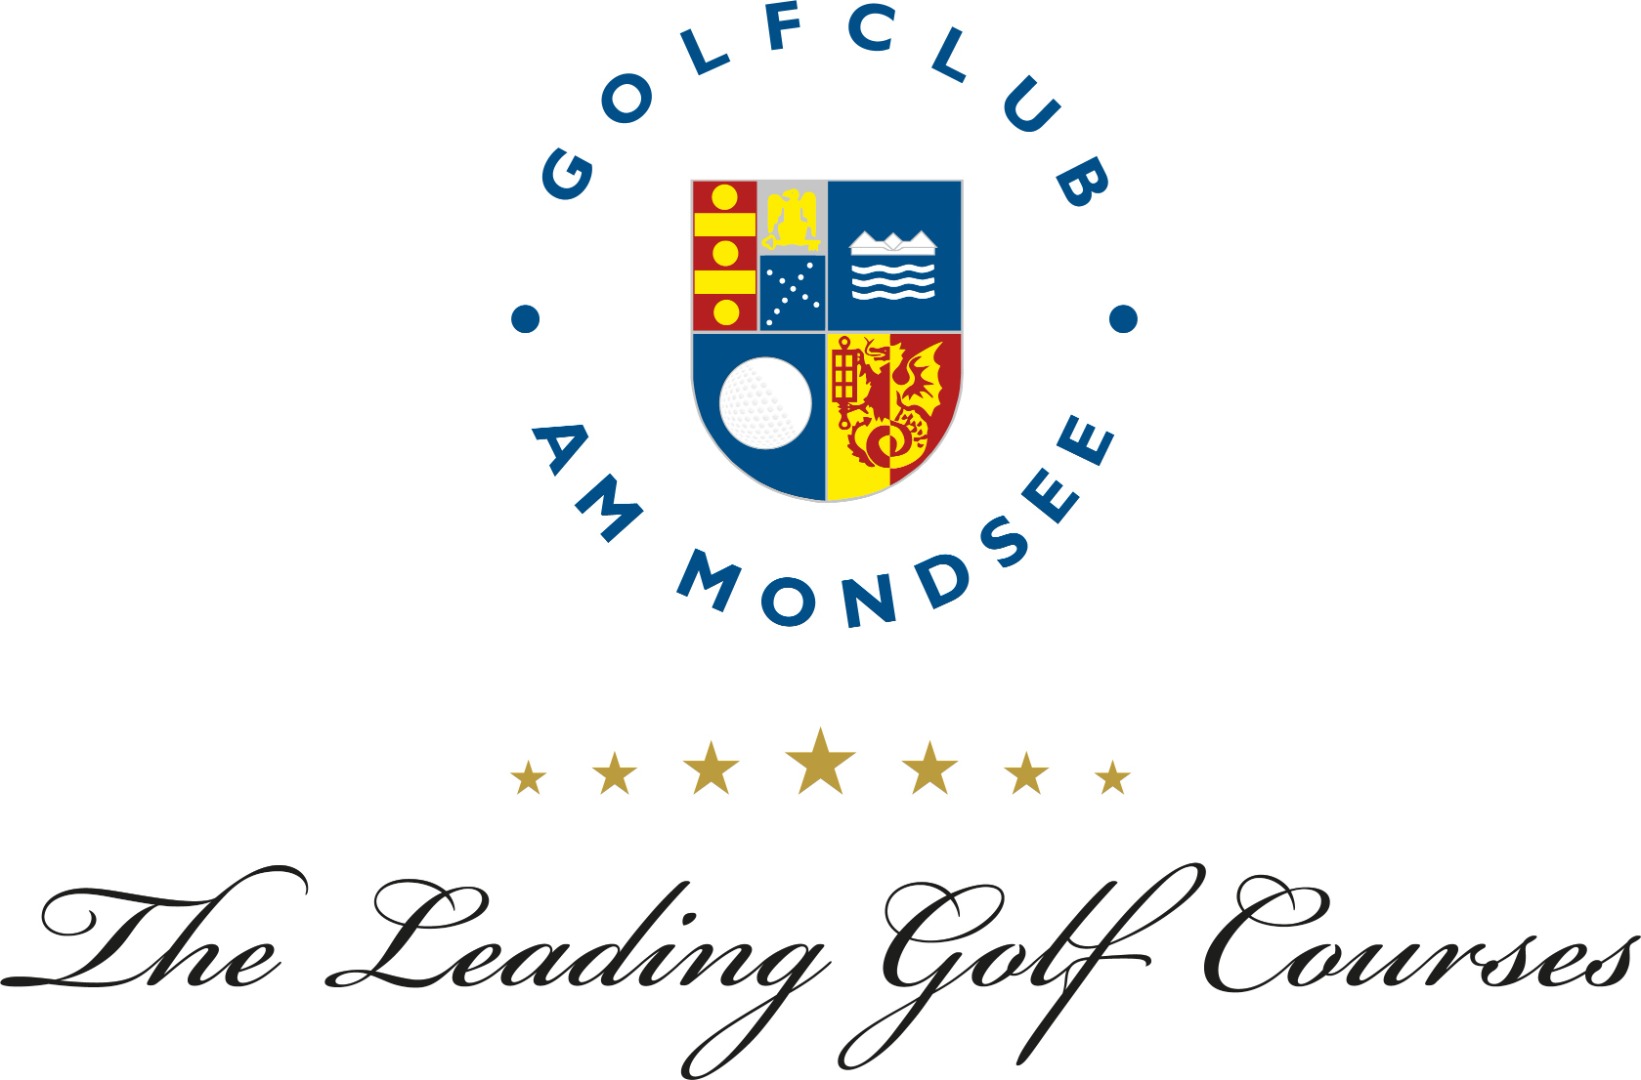 Golfclub Am Mondsee - Logo